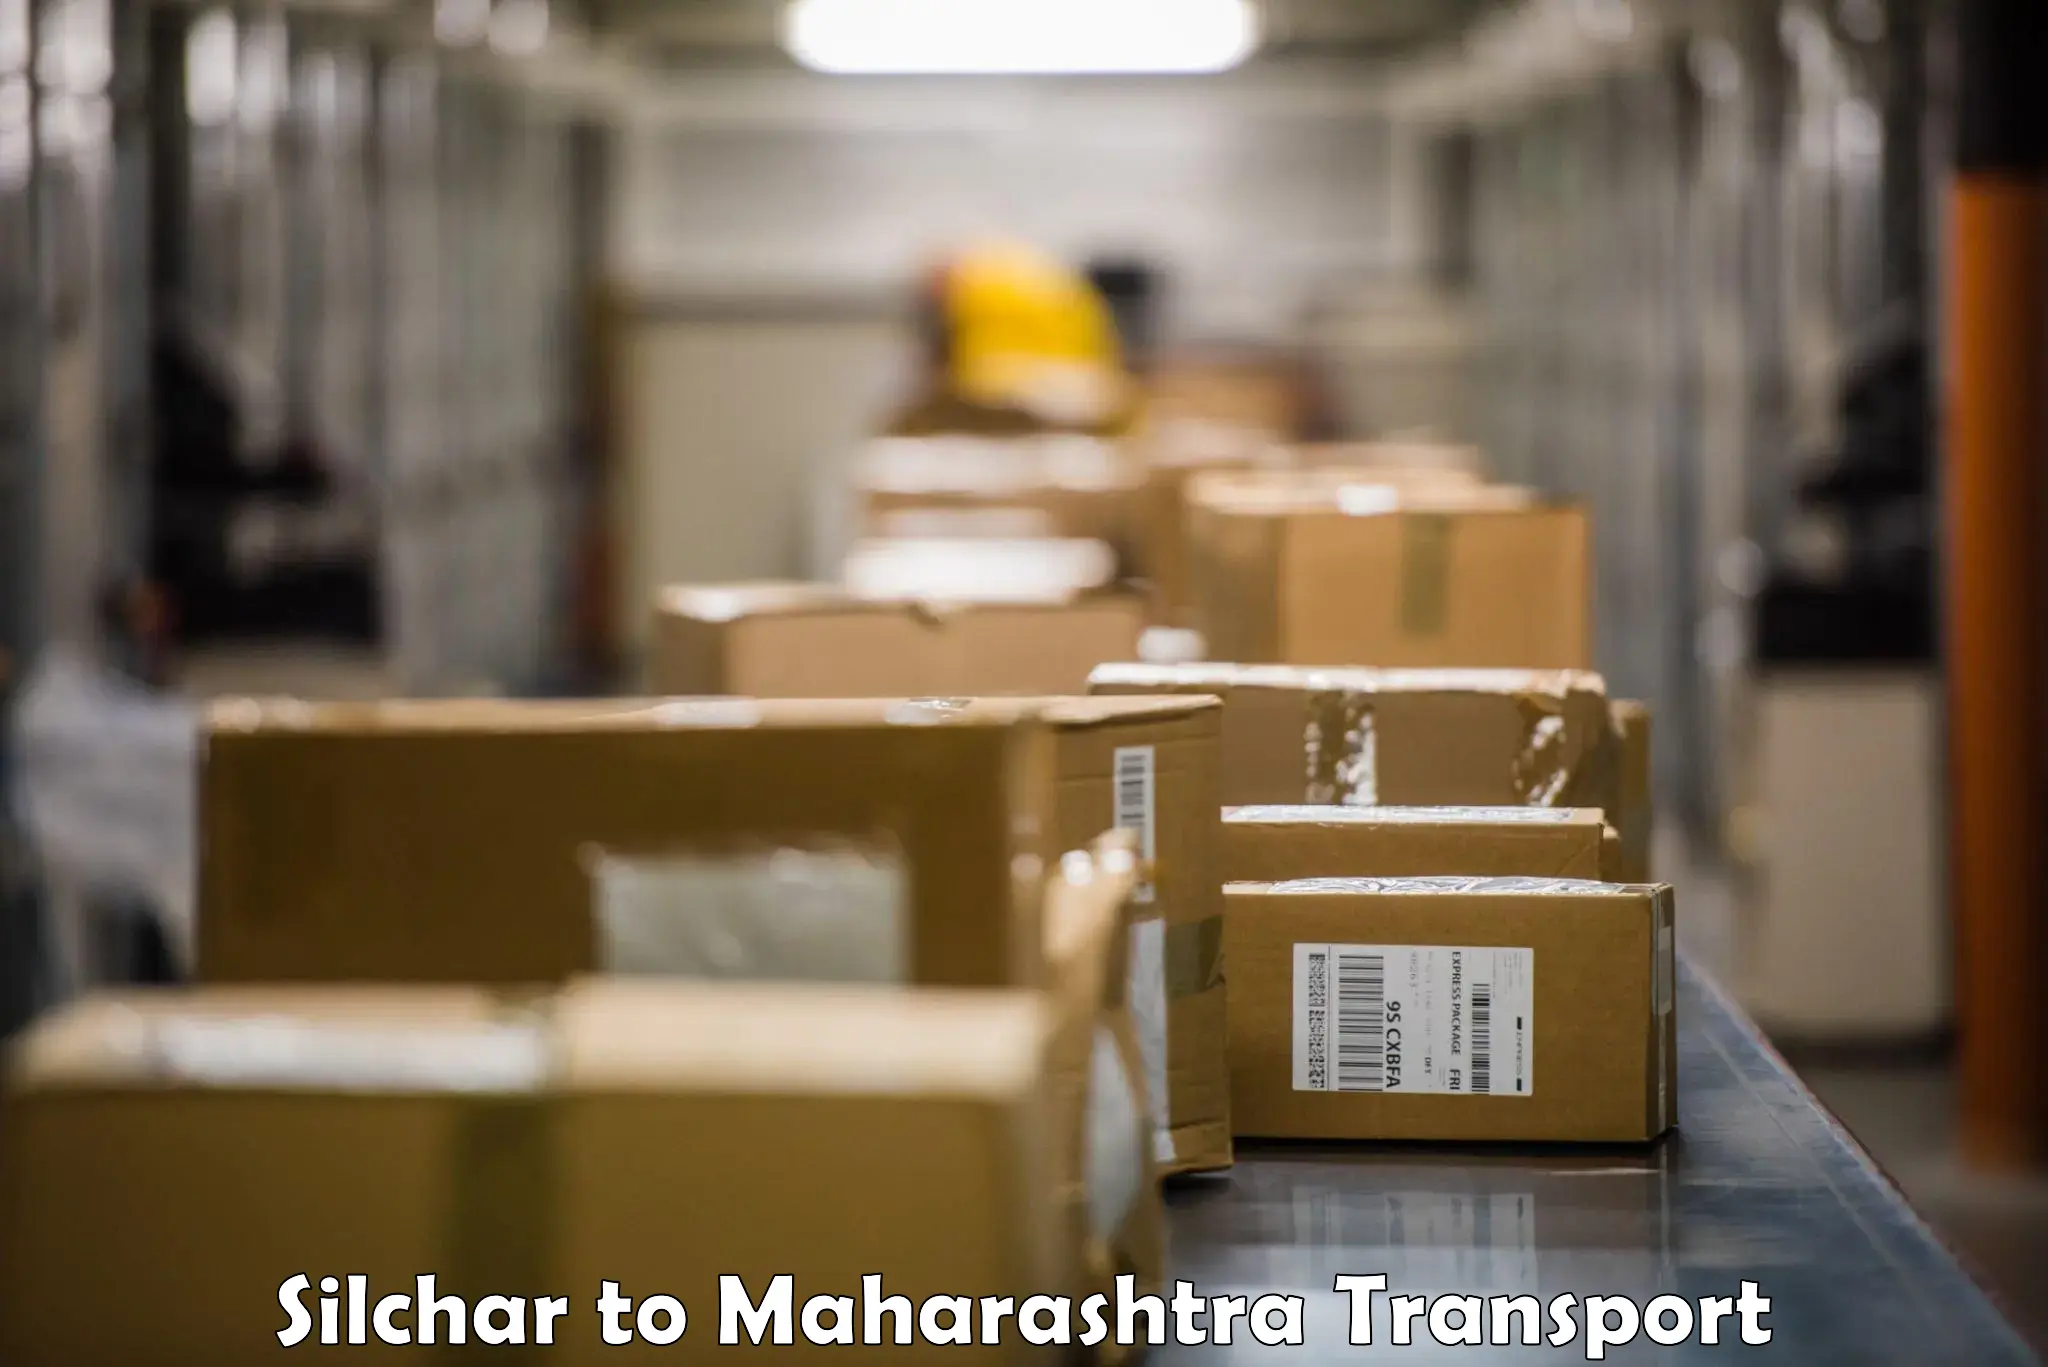 Online transport service Silchar to Nanded